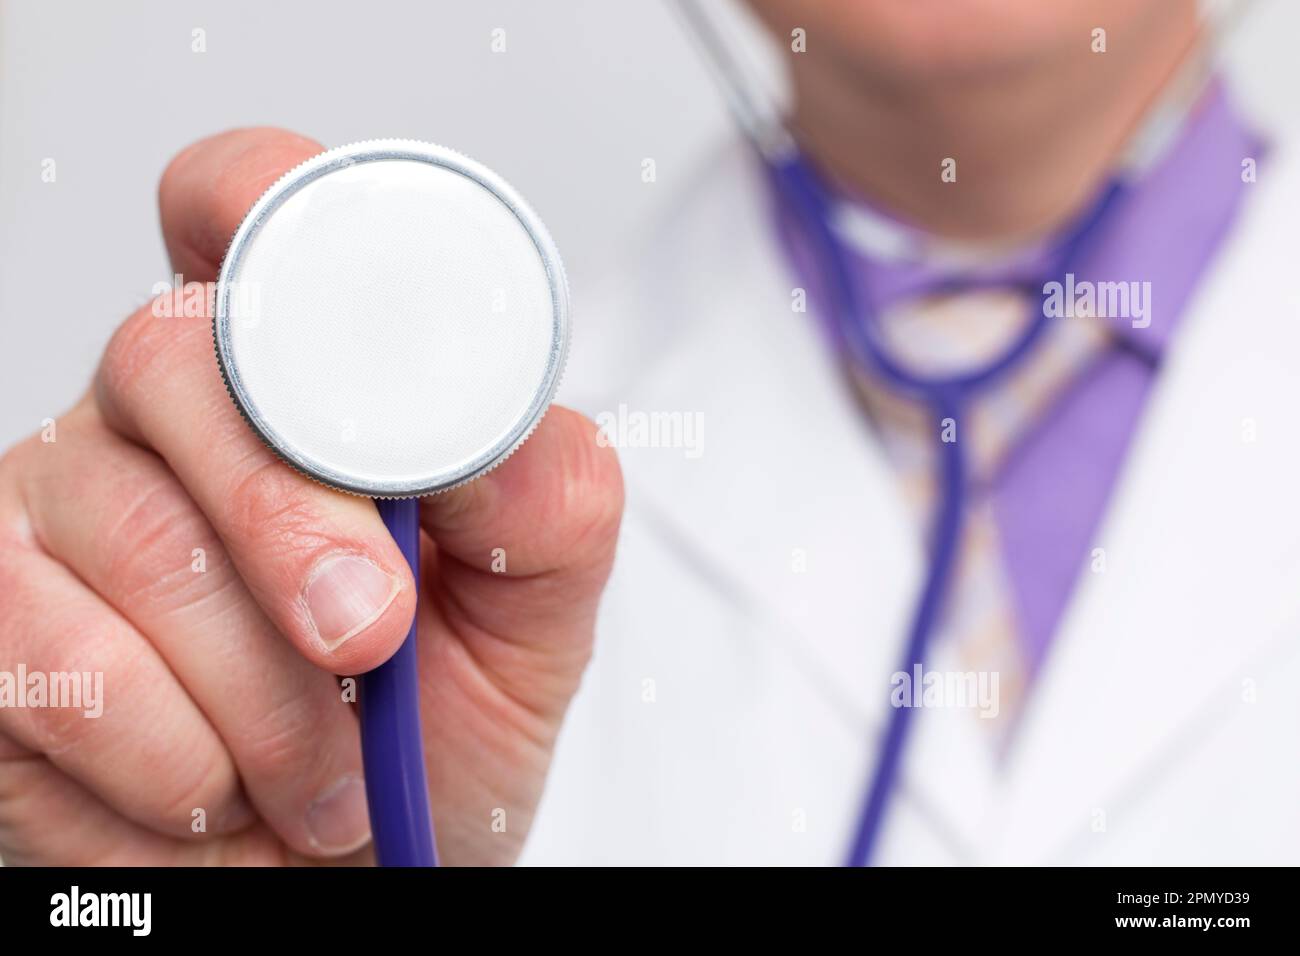 Nicht erkennbarer Arzt hält ein Stethoskop und zeigt die Glocke in Richtung  Kamera. Nahaufnahme des Geräts mit selektivem Fokus und unscharfem  Hintergrund Stockfotografie - Alamy